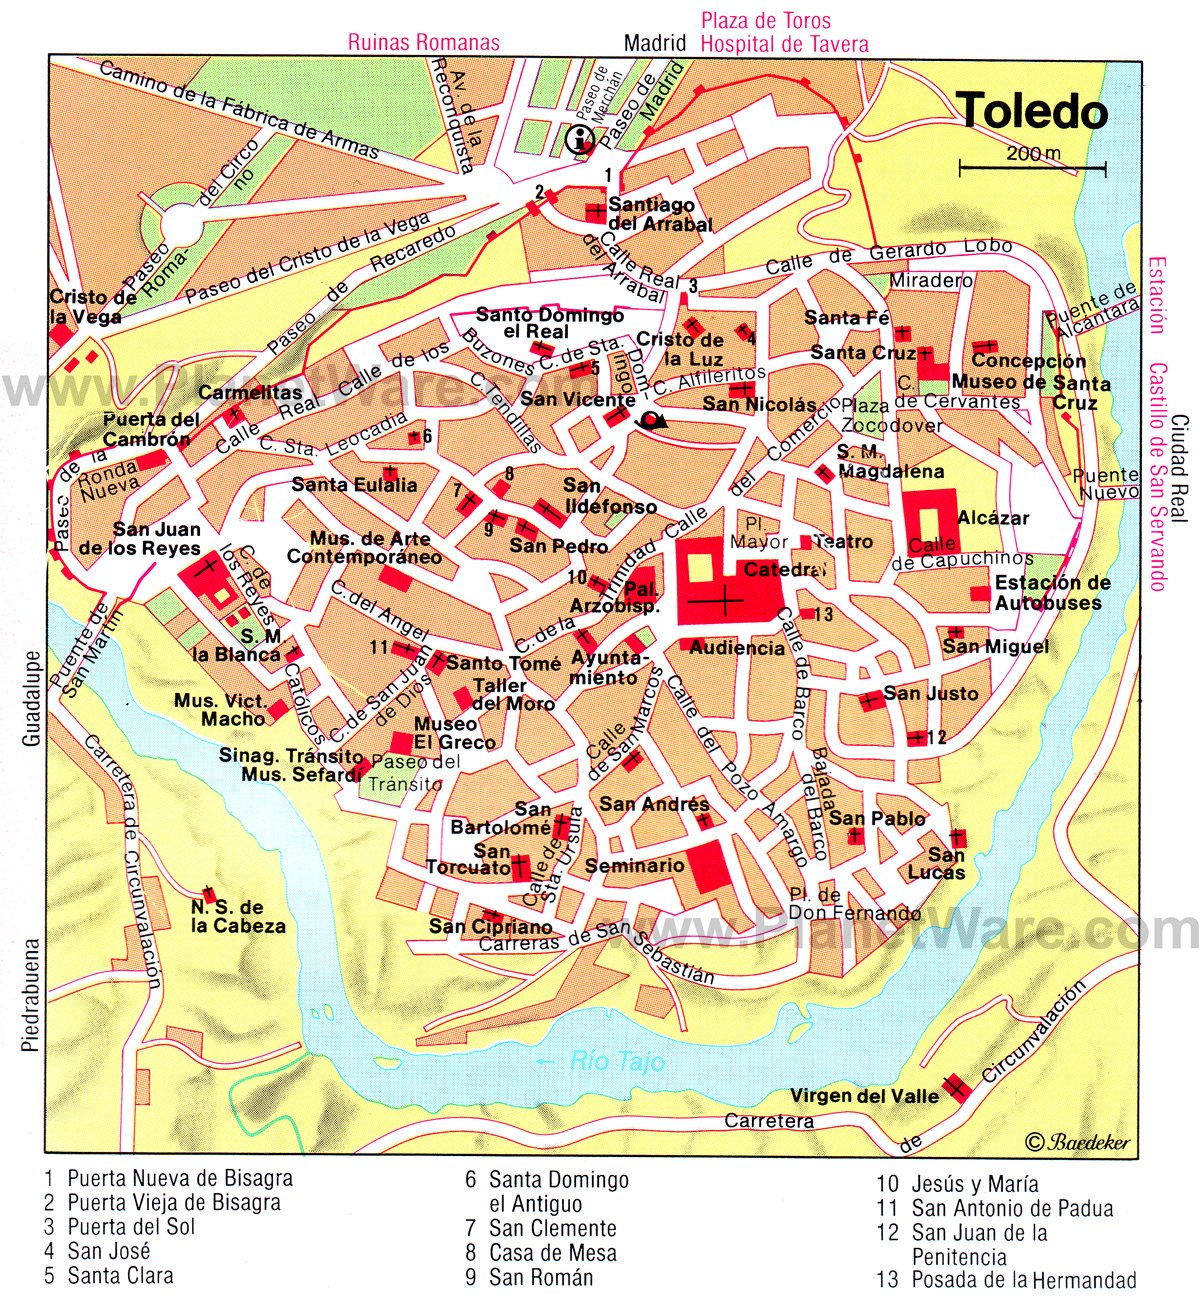 map of toledo spain